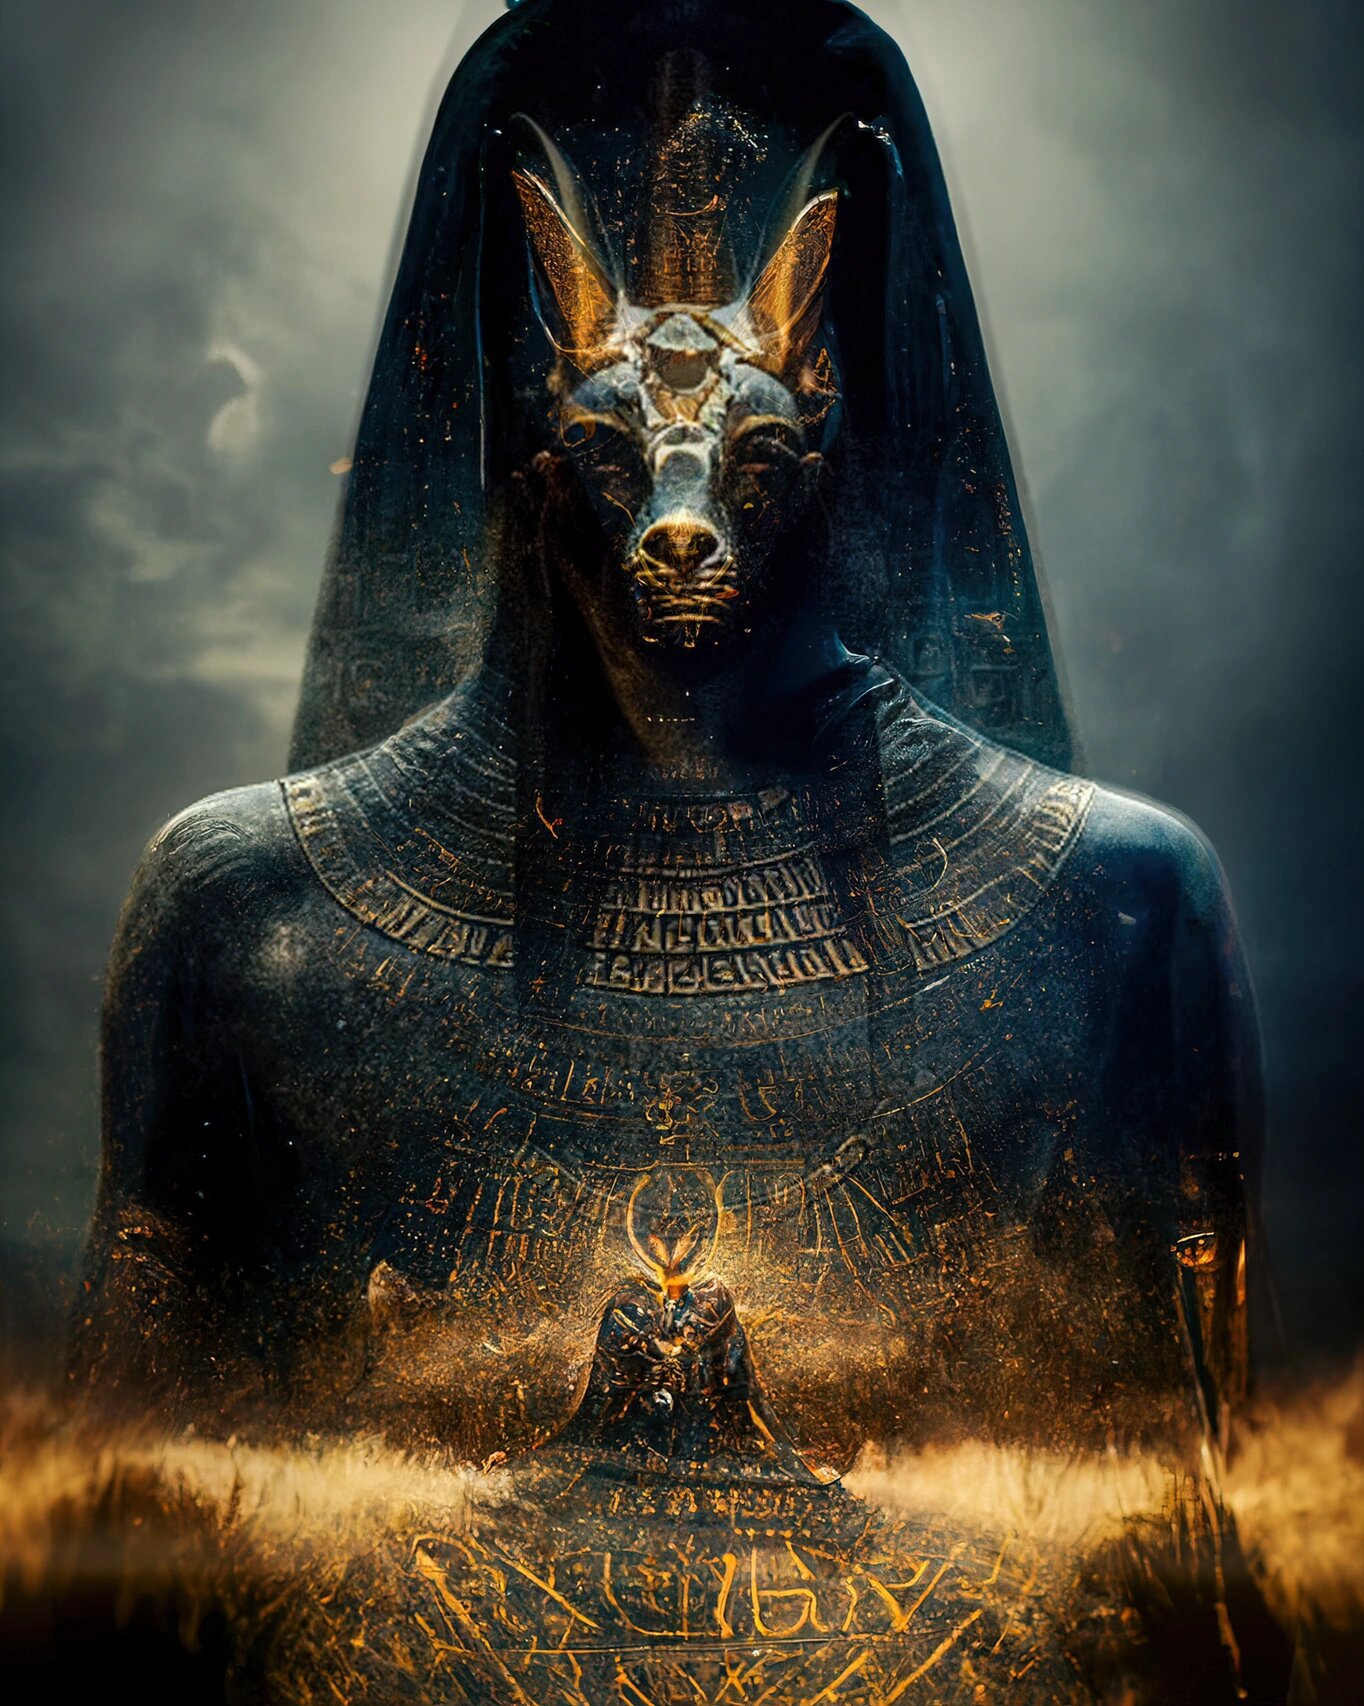 埃及神话·阿努比斯·沙漠死神 阿努比斯,是古埃及神话中的死神,一位